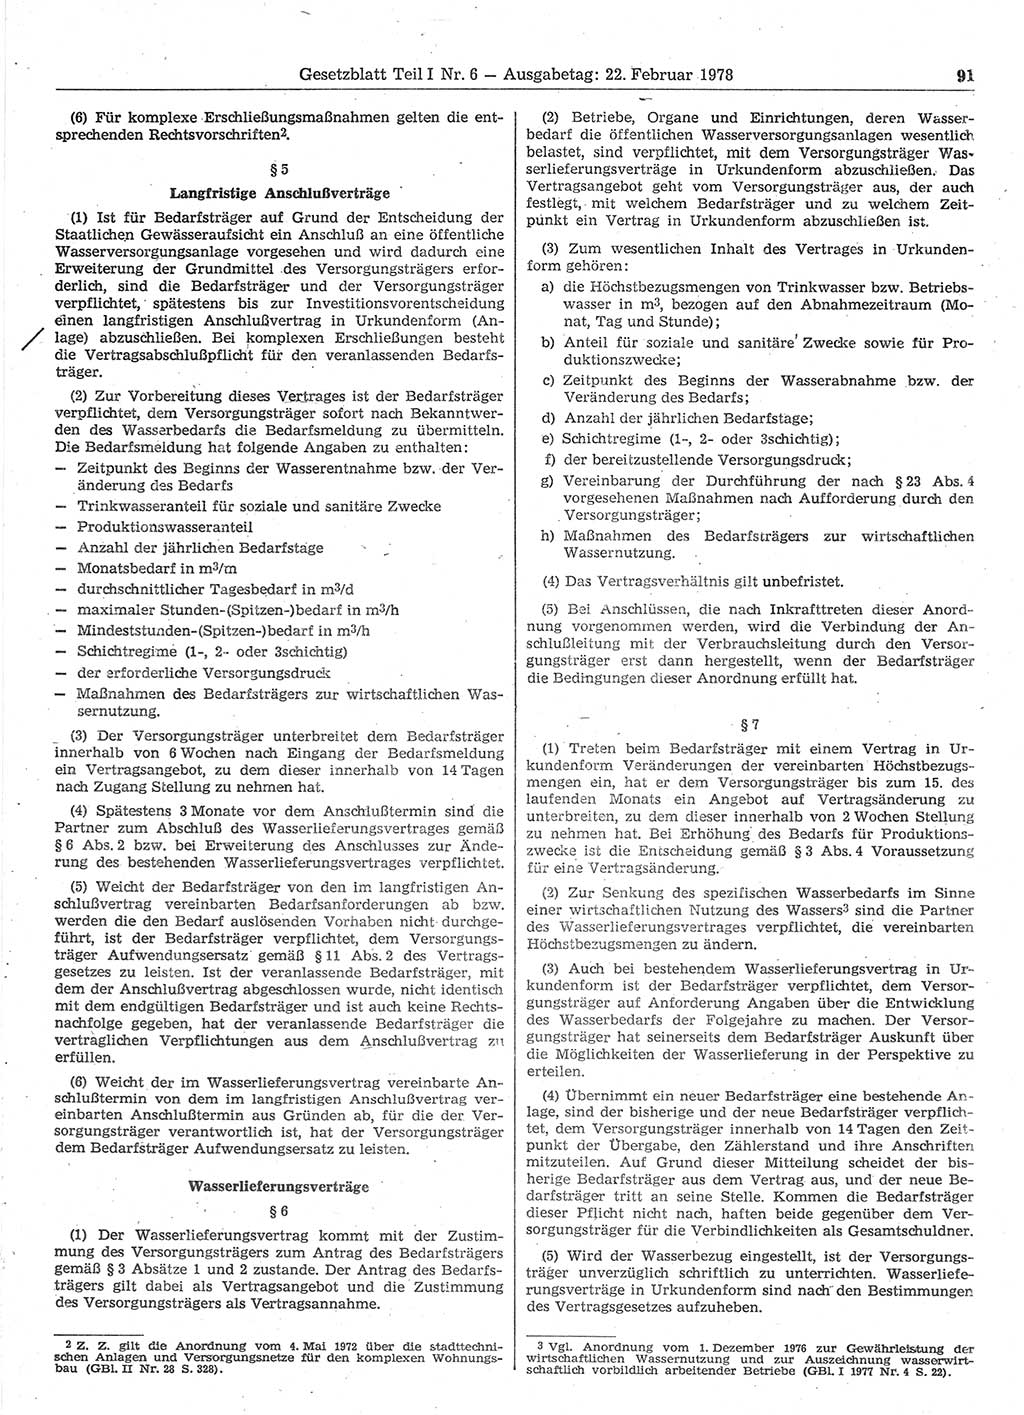 Gesetzblatt (GBl.) der Deutschen Demokratischen Republik (DDR) Teil Ⅰ 1978, Seite 91 (GBl. DDR Ⅰ 1978, S. 91)